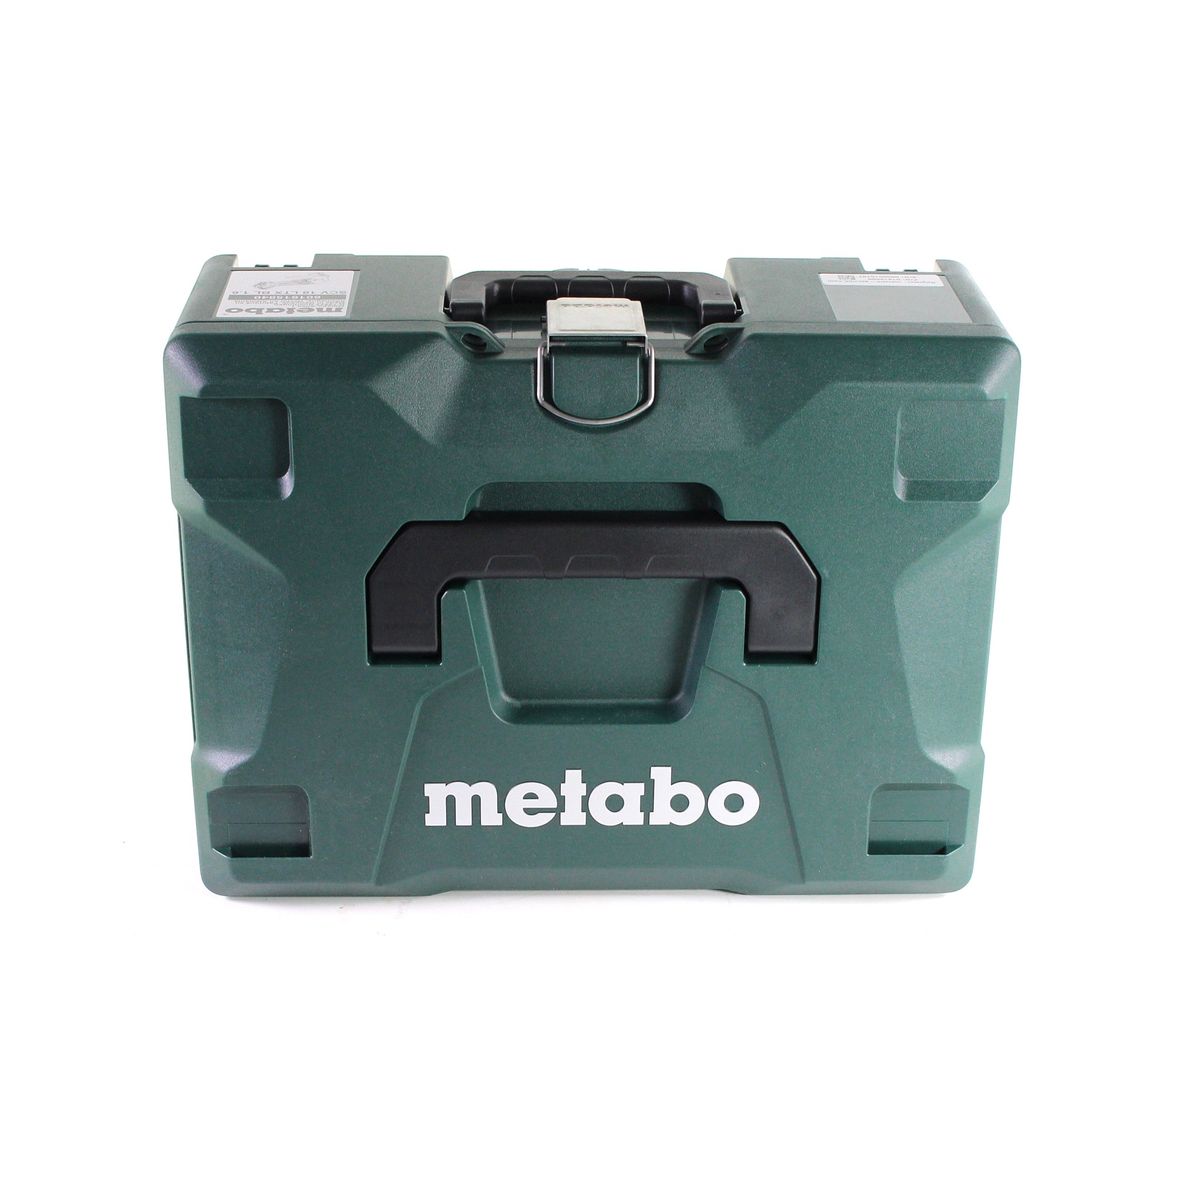 Metabo SCV 18 LTX BL 1.6 Cisaille à tôle sans fil 18 V Brushless + 2x Batteries LiHD 5,5 Ah + Chargeur + Coffret  MetaLoc - Full Service - GRATUIT - 3 ans de protection complète